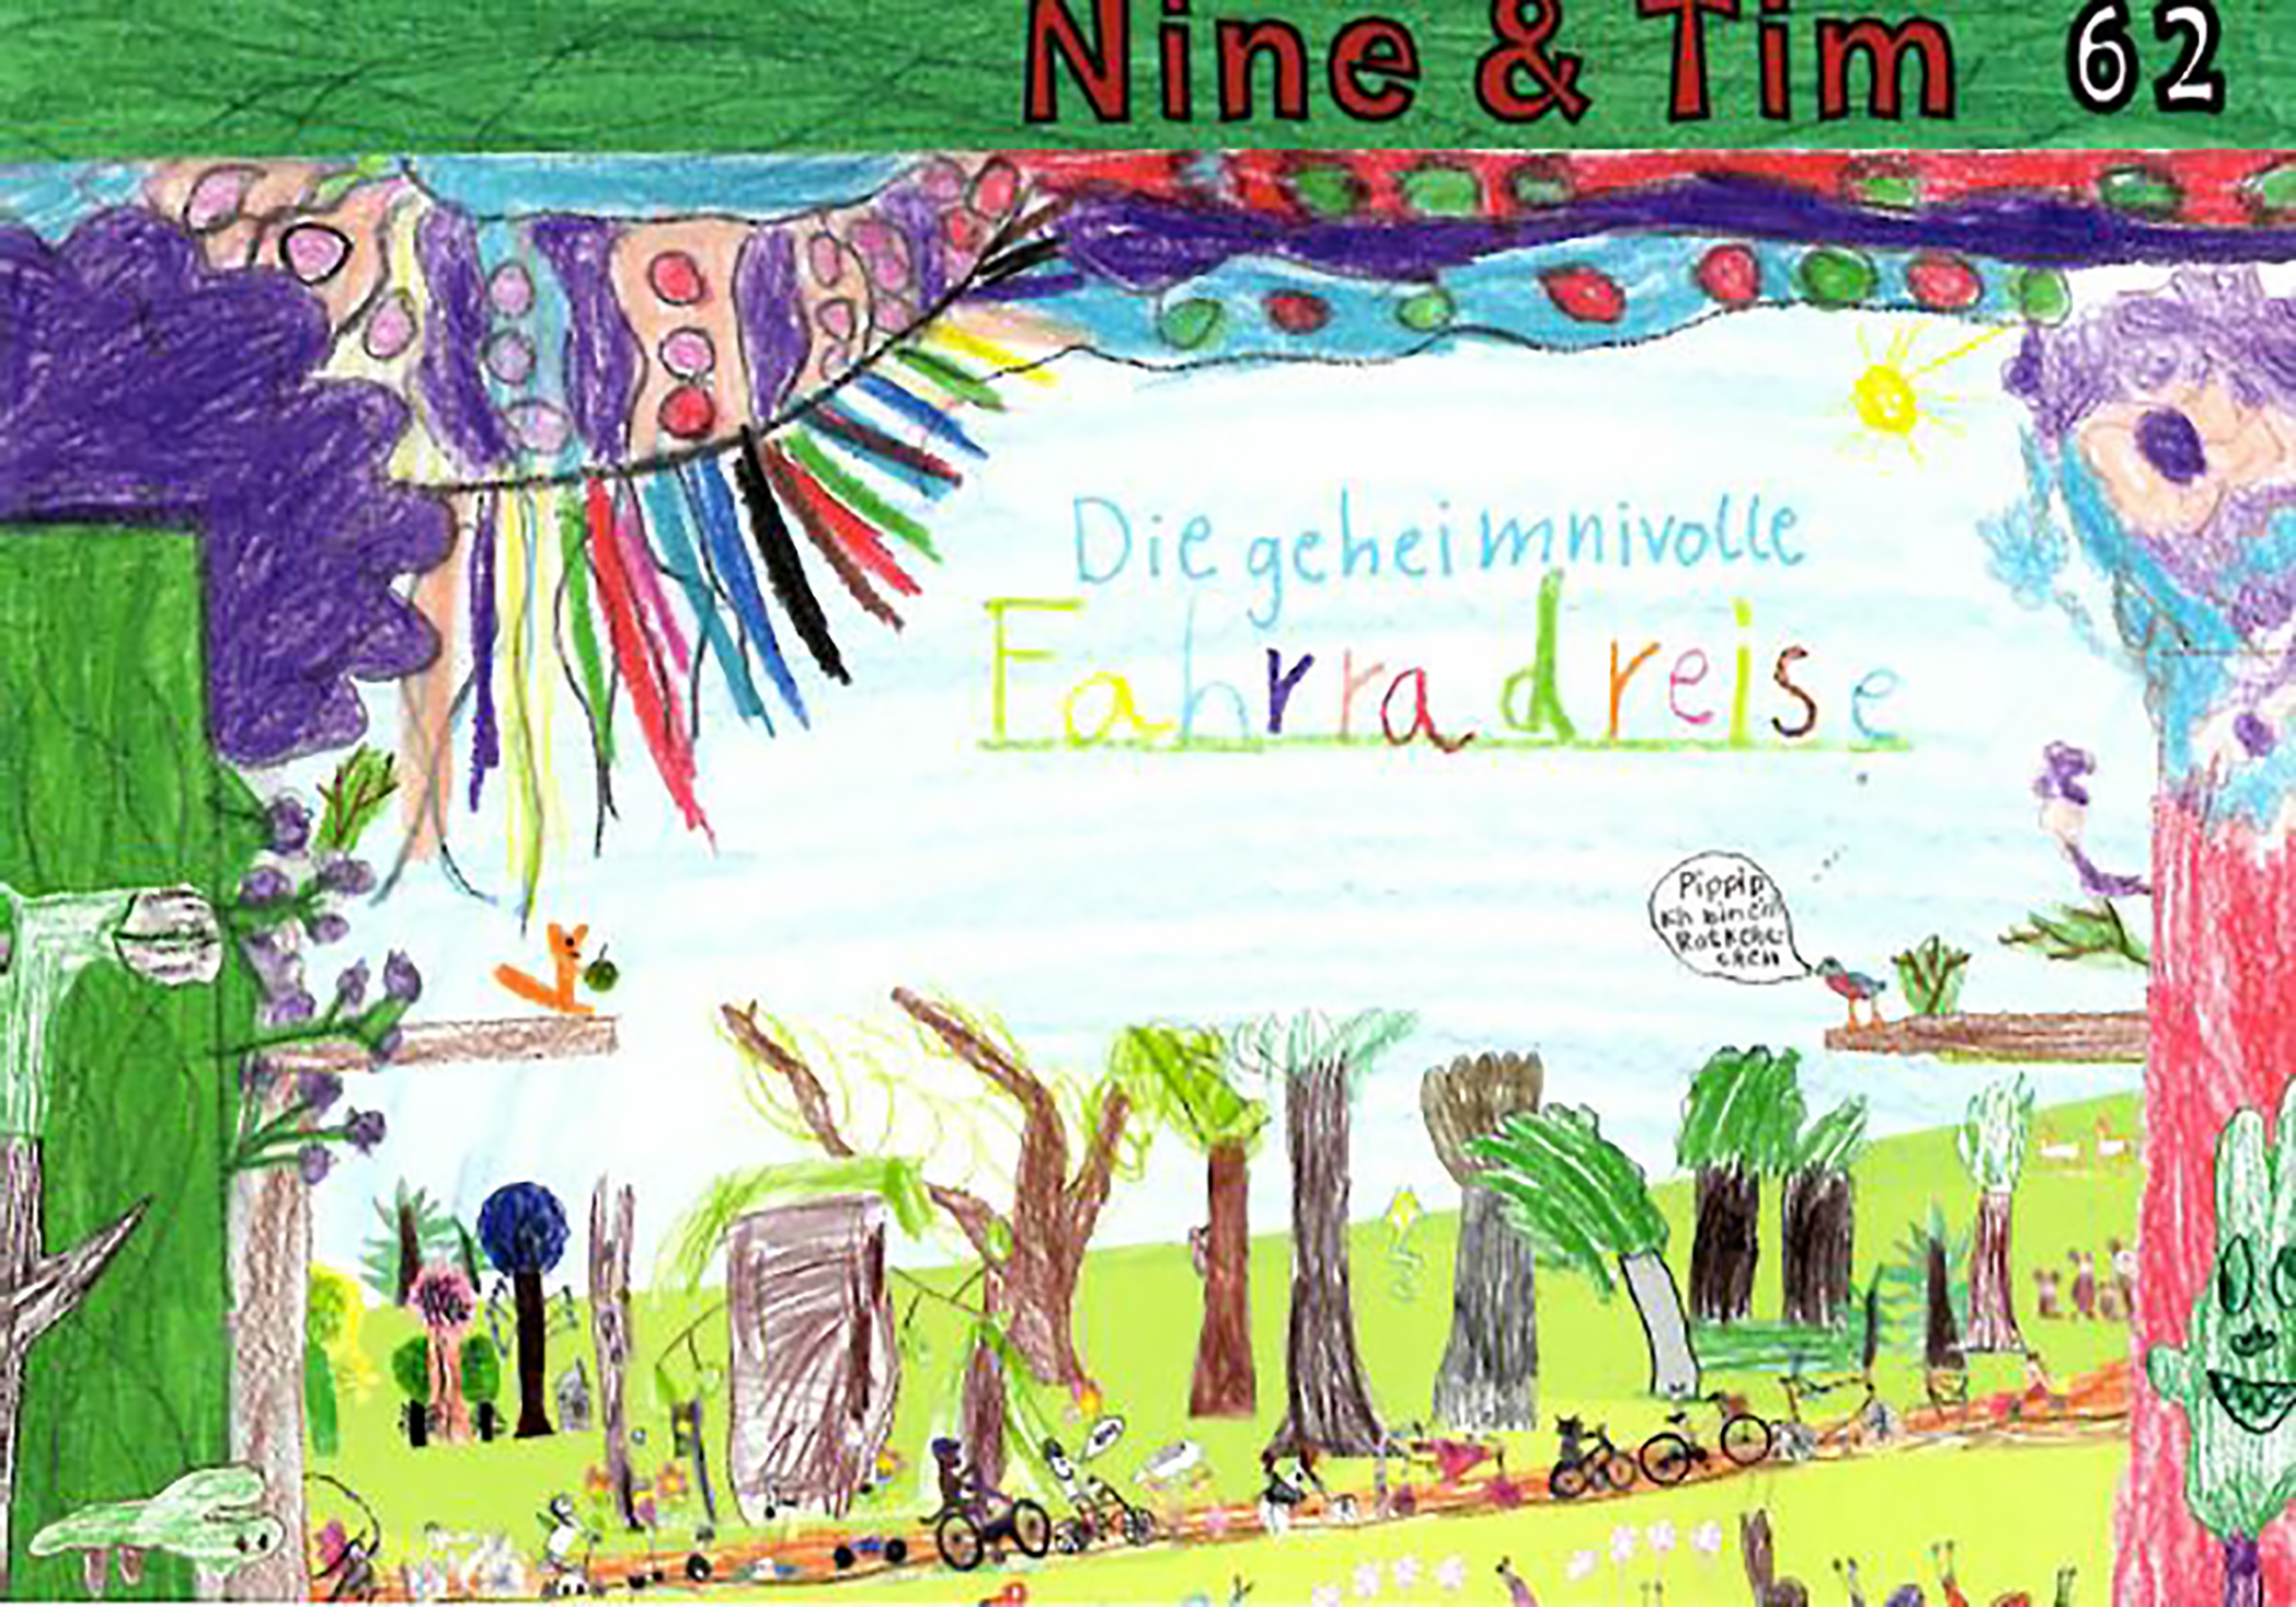 Das Bild zeigt ein Cover der Publikation Nine  Tim Heft 62